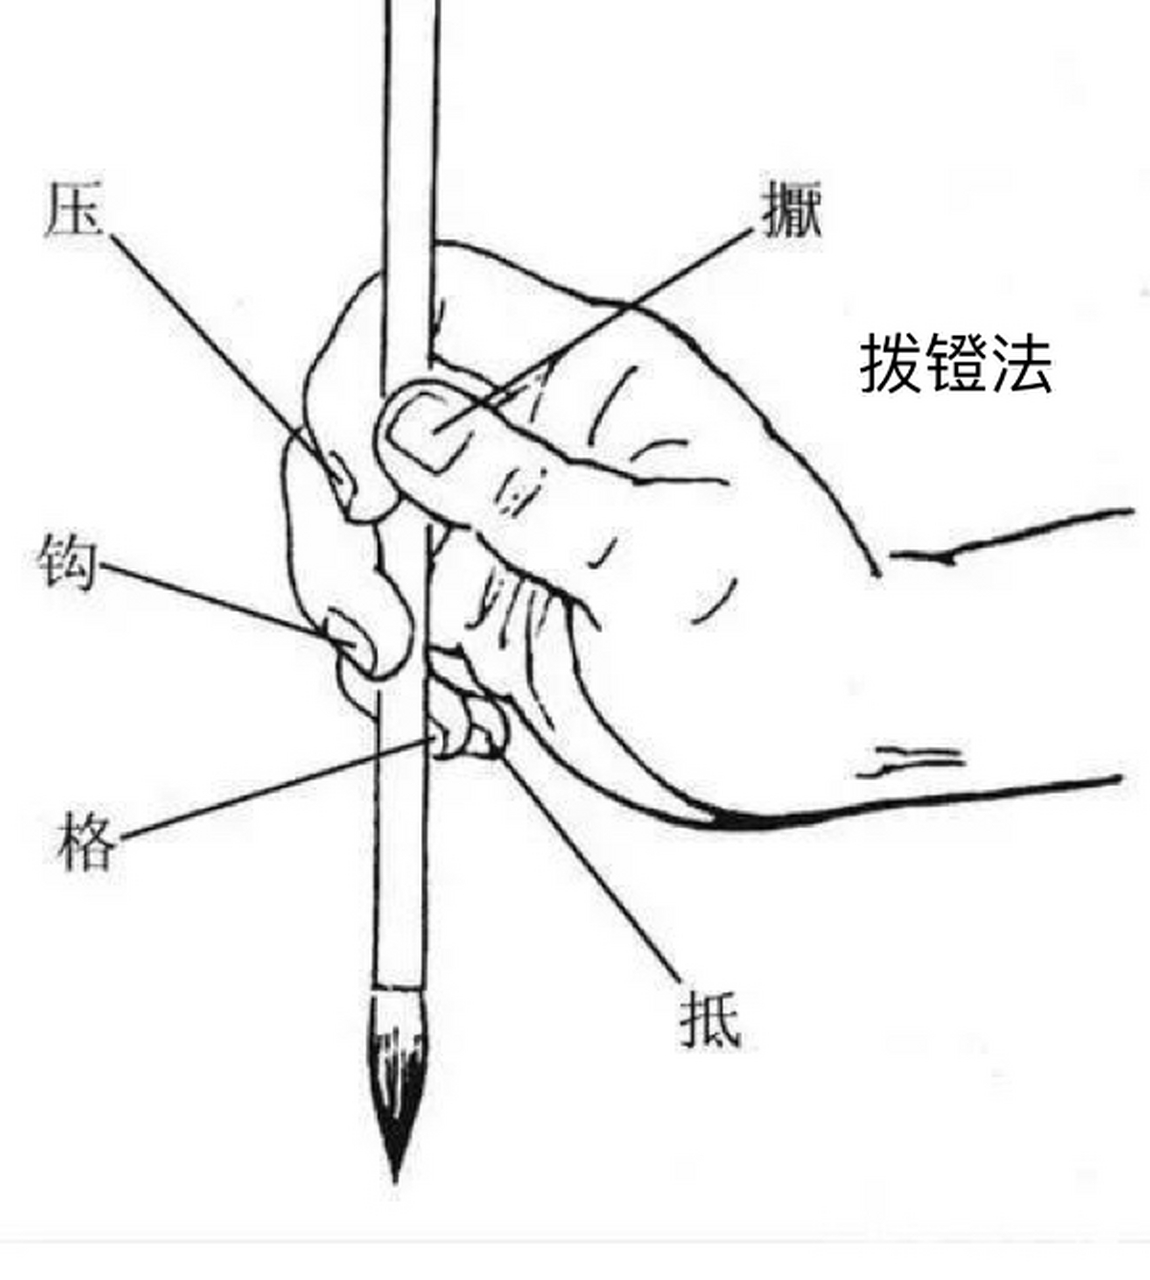 毛笔的握法三种方法图片